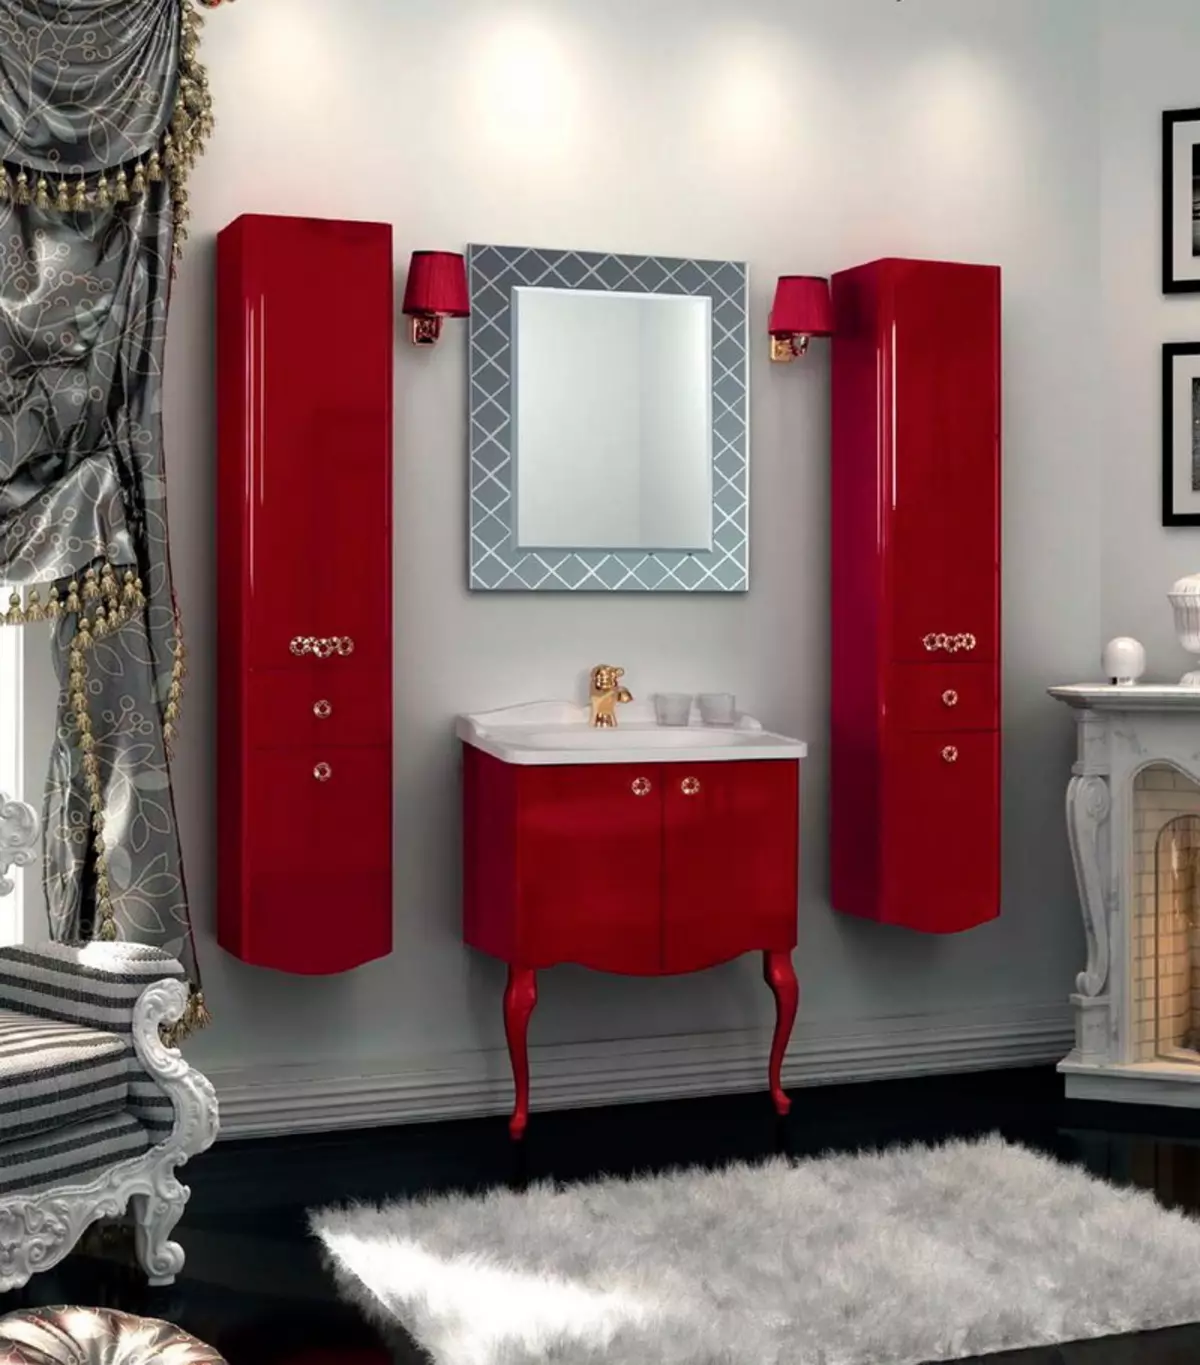 Пенал для ванної кімнати: огляд шаф шириною 25 см і глибиною 20 см, вузькі моделі і з розмірами 30 см і 50 см, 60 см і 35 см, підлогові, червоні і білі 10387_62